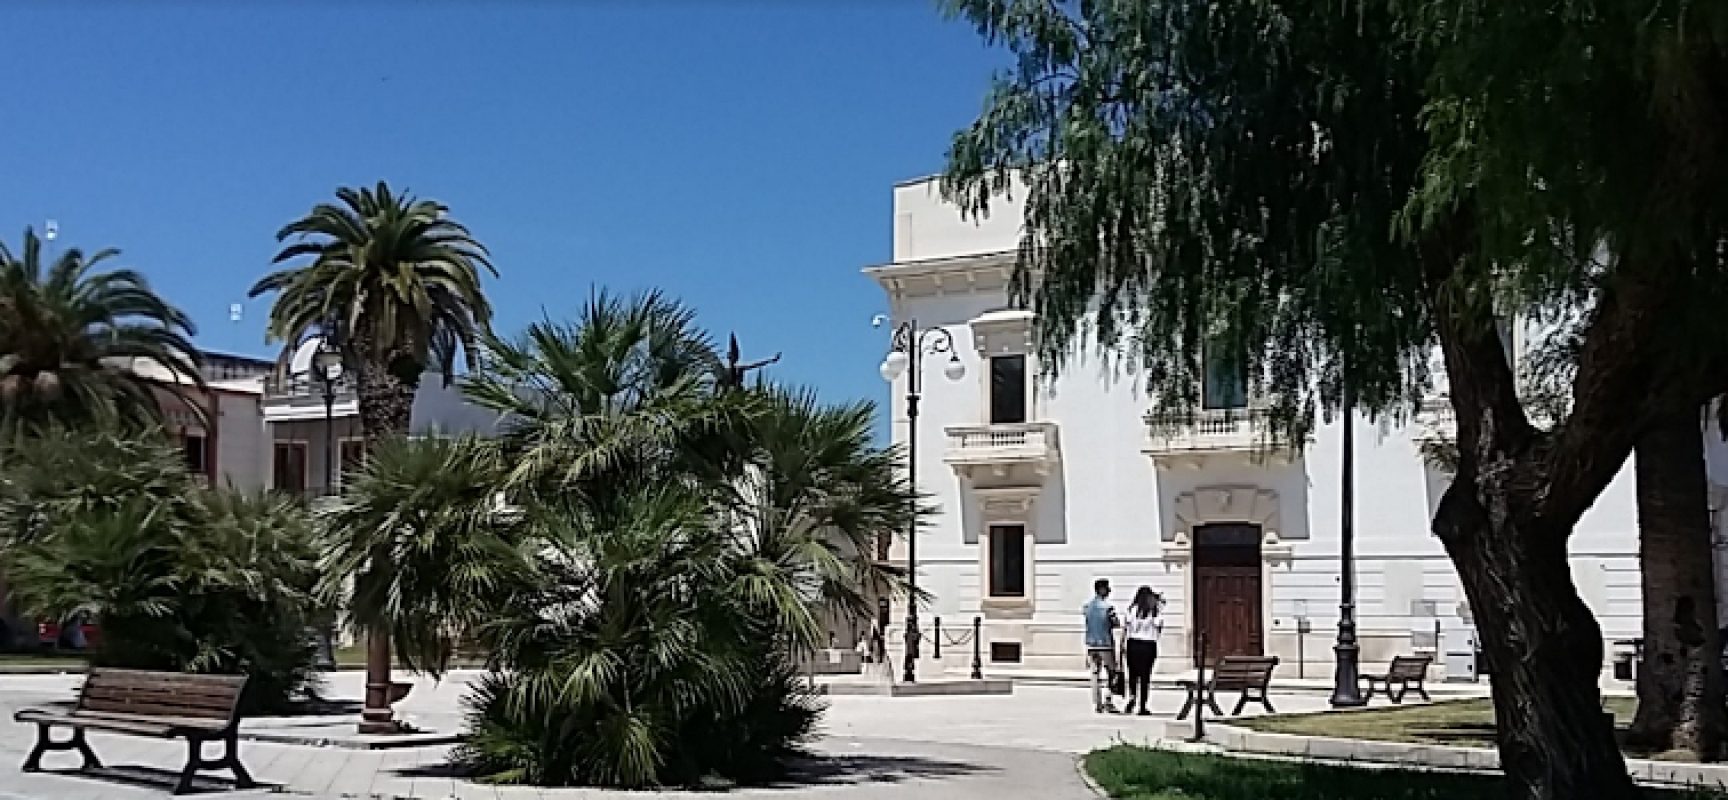 Rassegna “Fuori Libri”, oggi tappa a San Ferdinando di Puglia con quattro autori